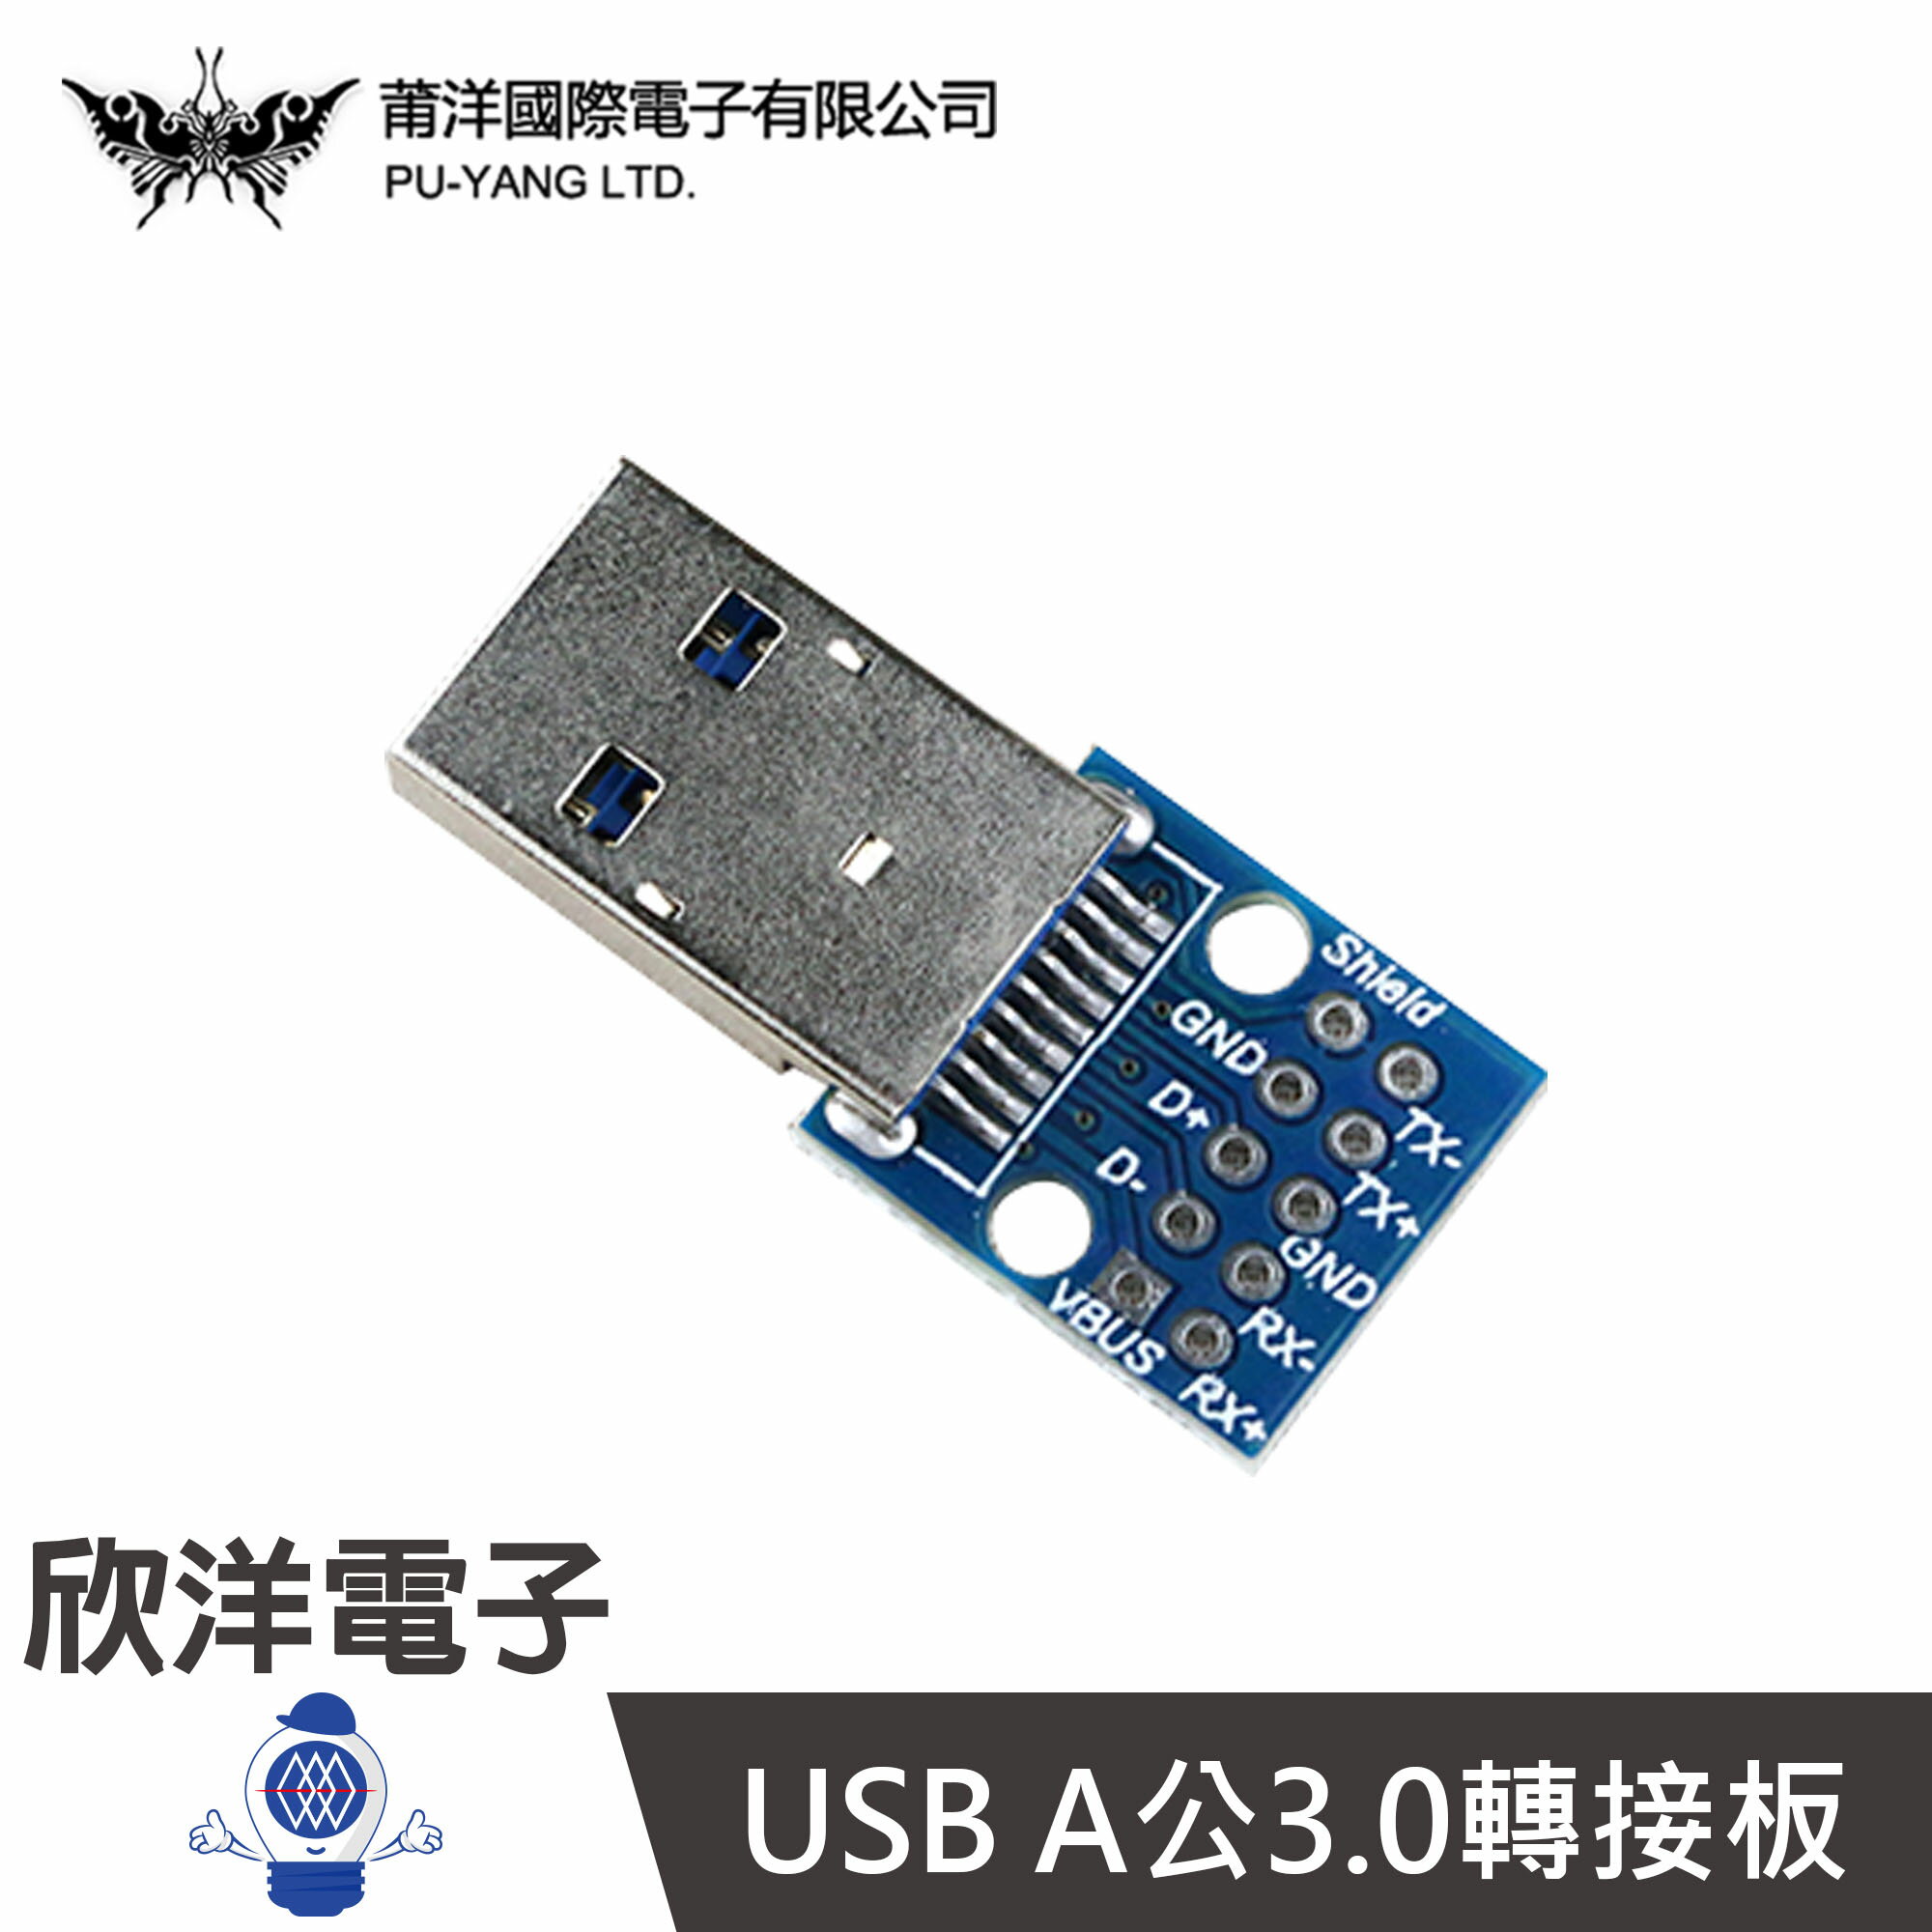 ※ 欣洋電子 ※ USB A公3.0轉接板(1378D) /實驗室/學生模組/電子材料/電子工程/適用Arduino